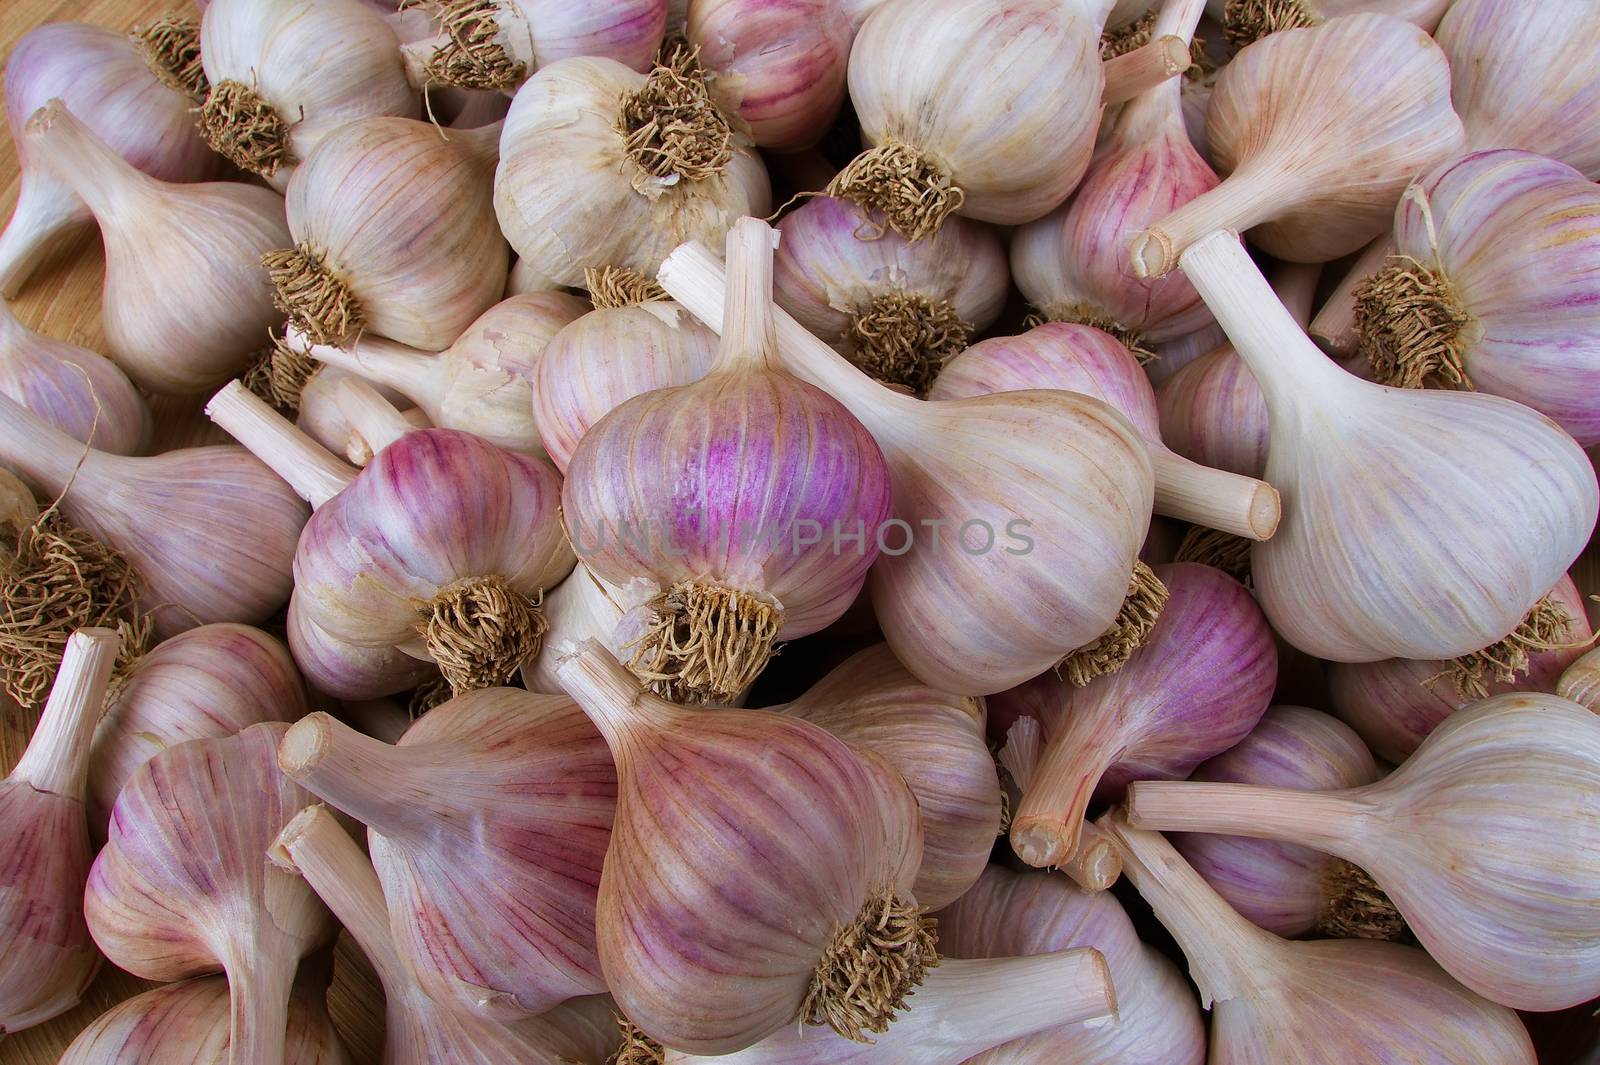 Pile of Garlic by bobkeenan